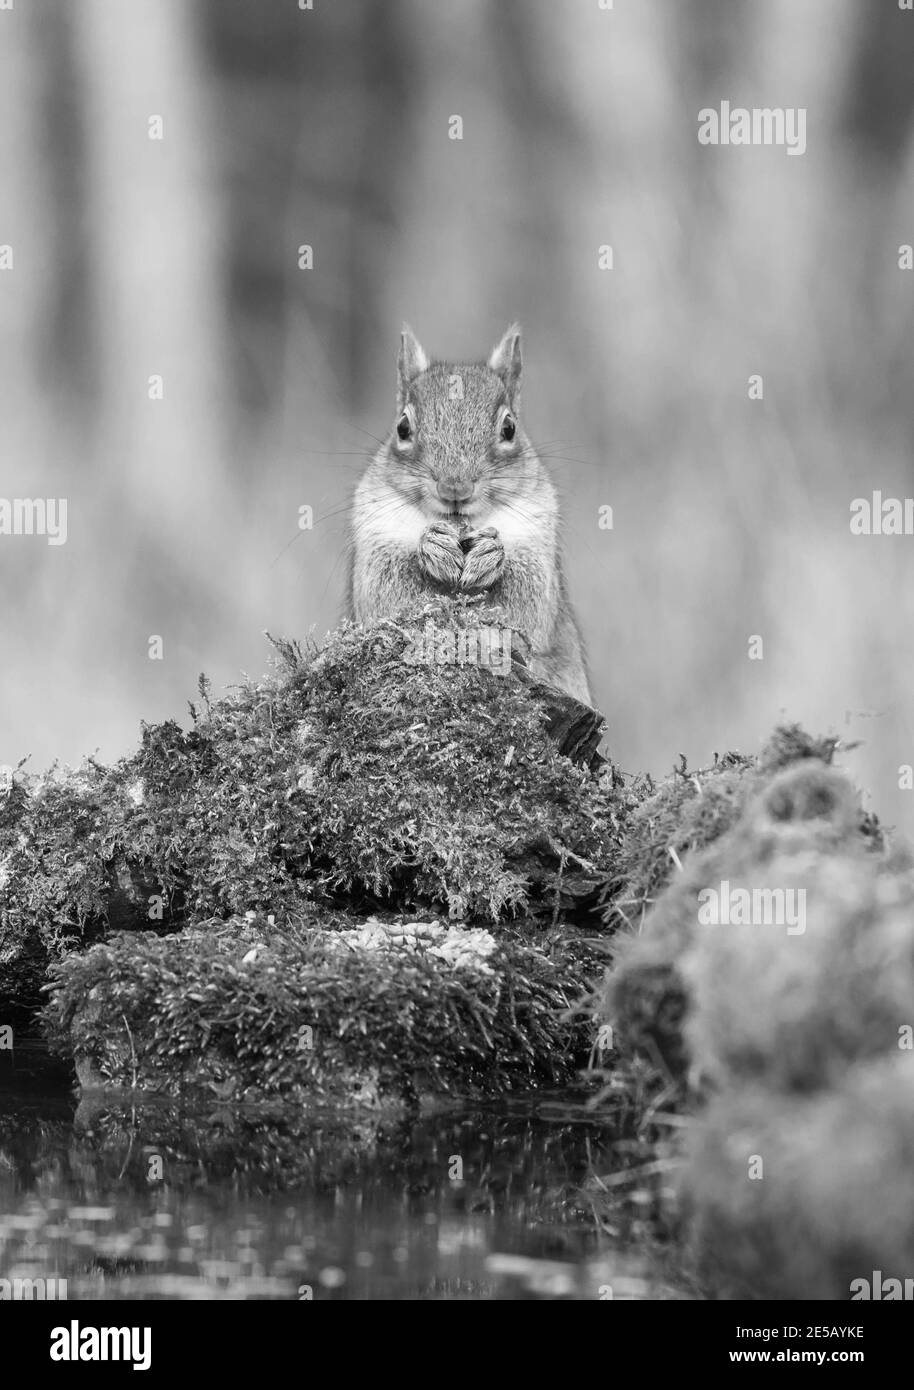 L'écureuil gris (Sciurus carolinensis) s'assit sur la mouscule, Shrewsbury, Royaume-Uni. Mars 2020 Banque D'Images